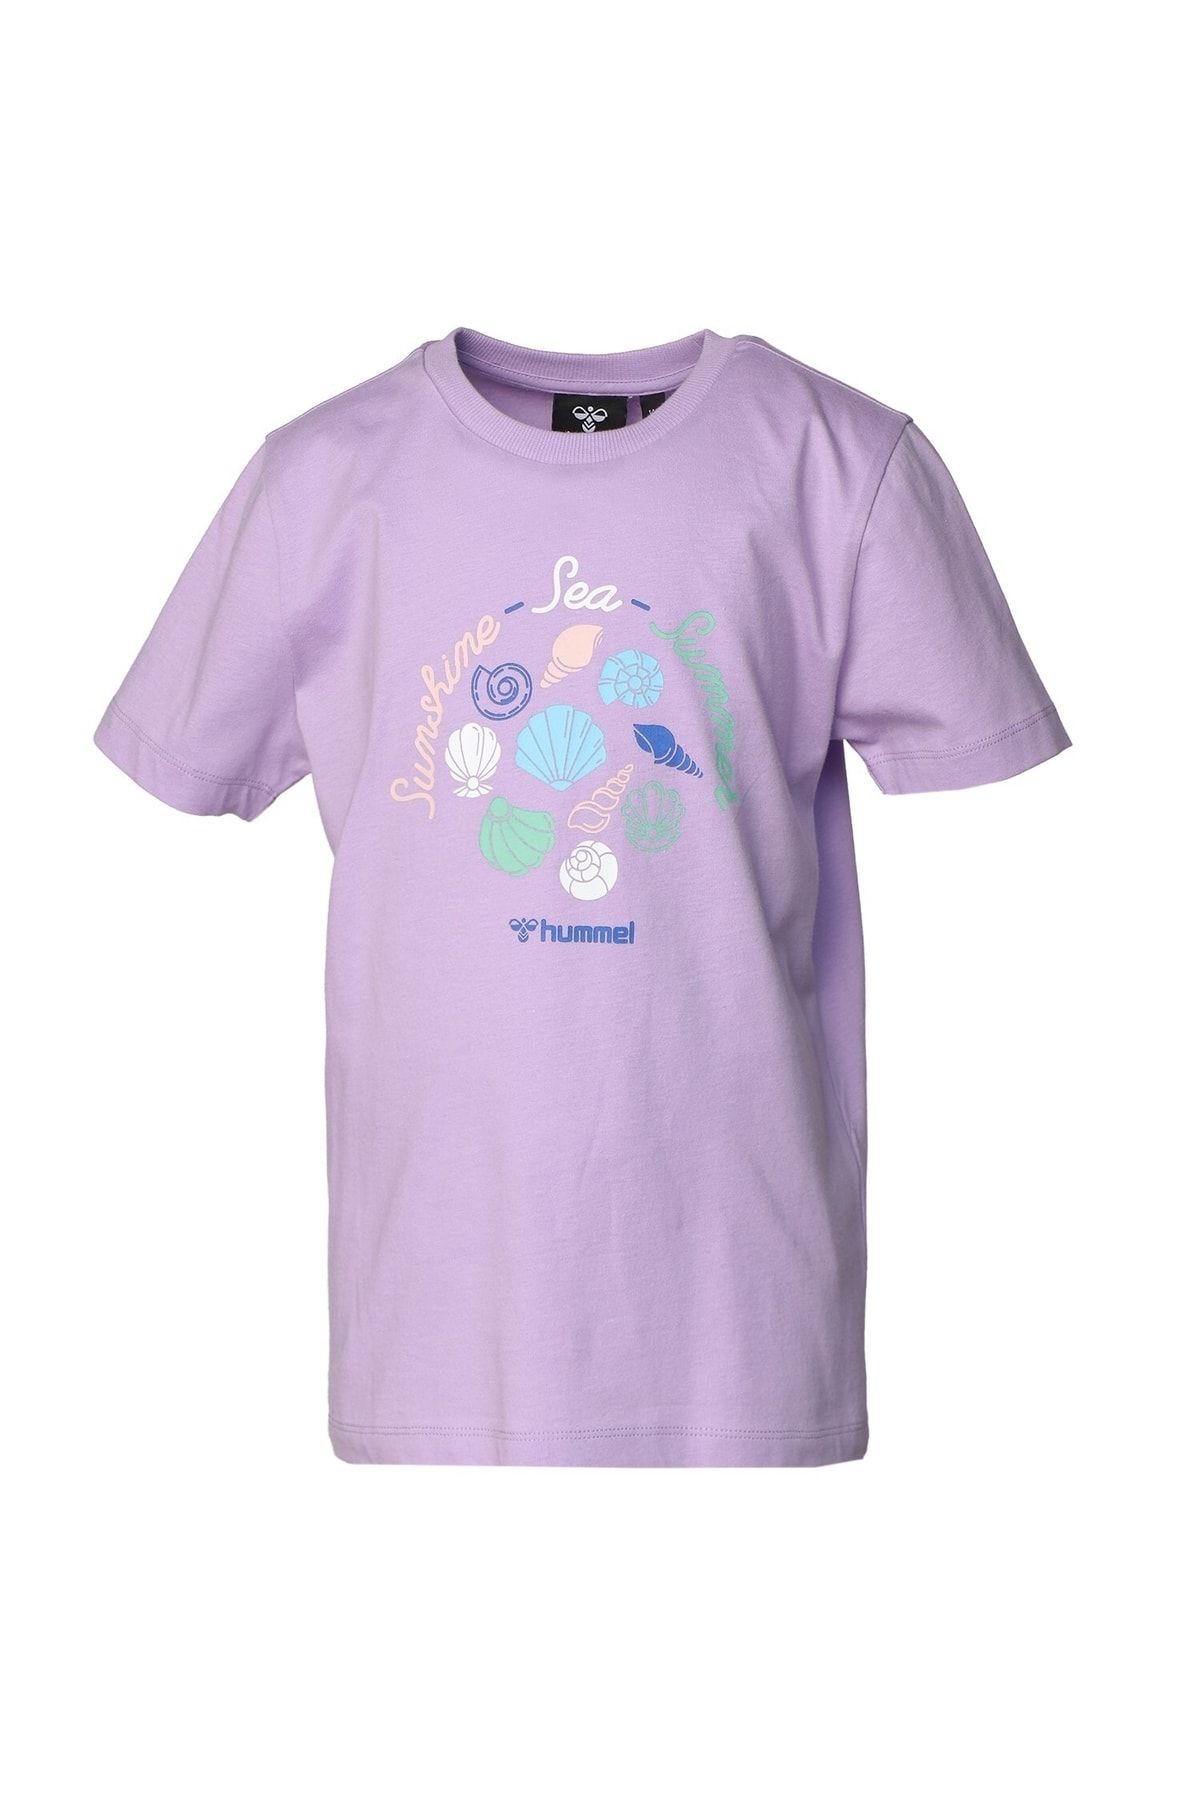 hummel Sakura Çocuk T-shirt